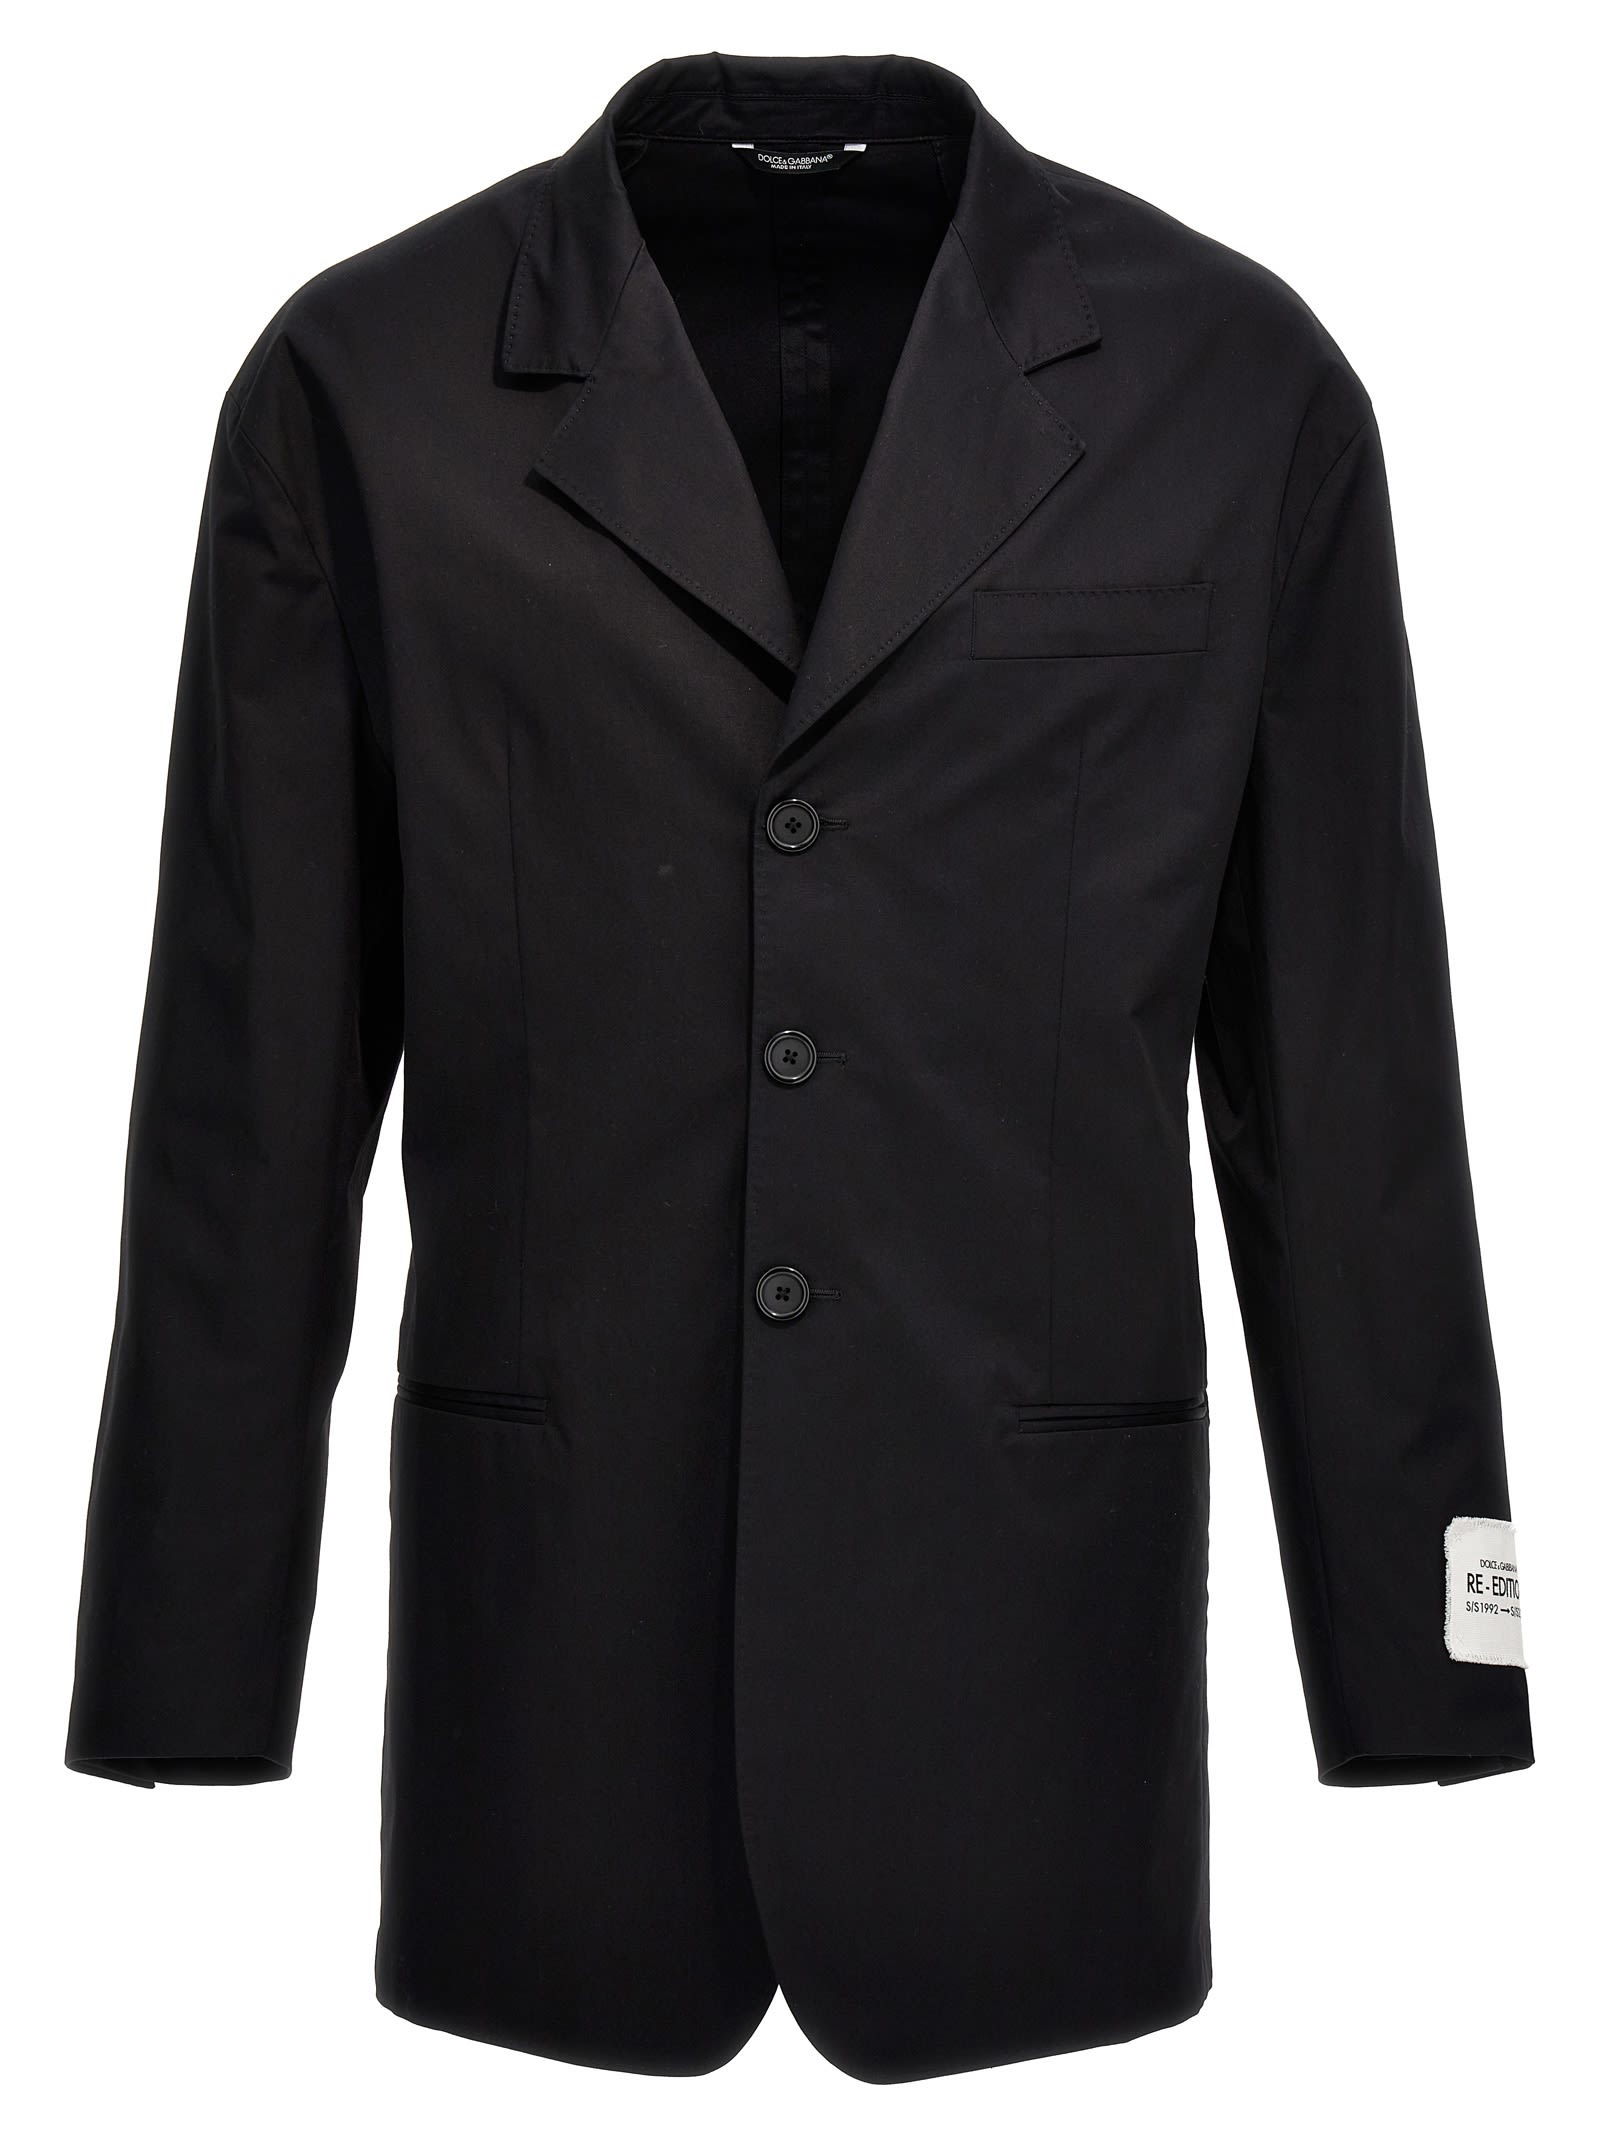 Shop Dolce & Gabbana Re-edition S/s 1992 Blazer Jacket In Black